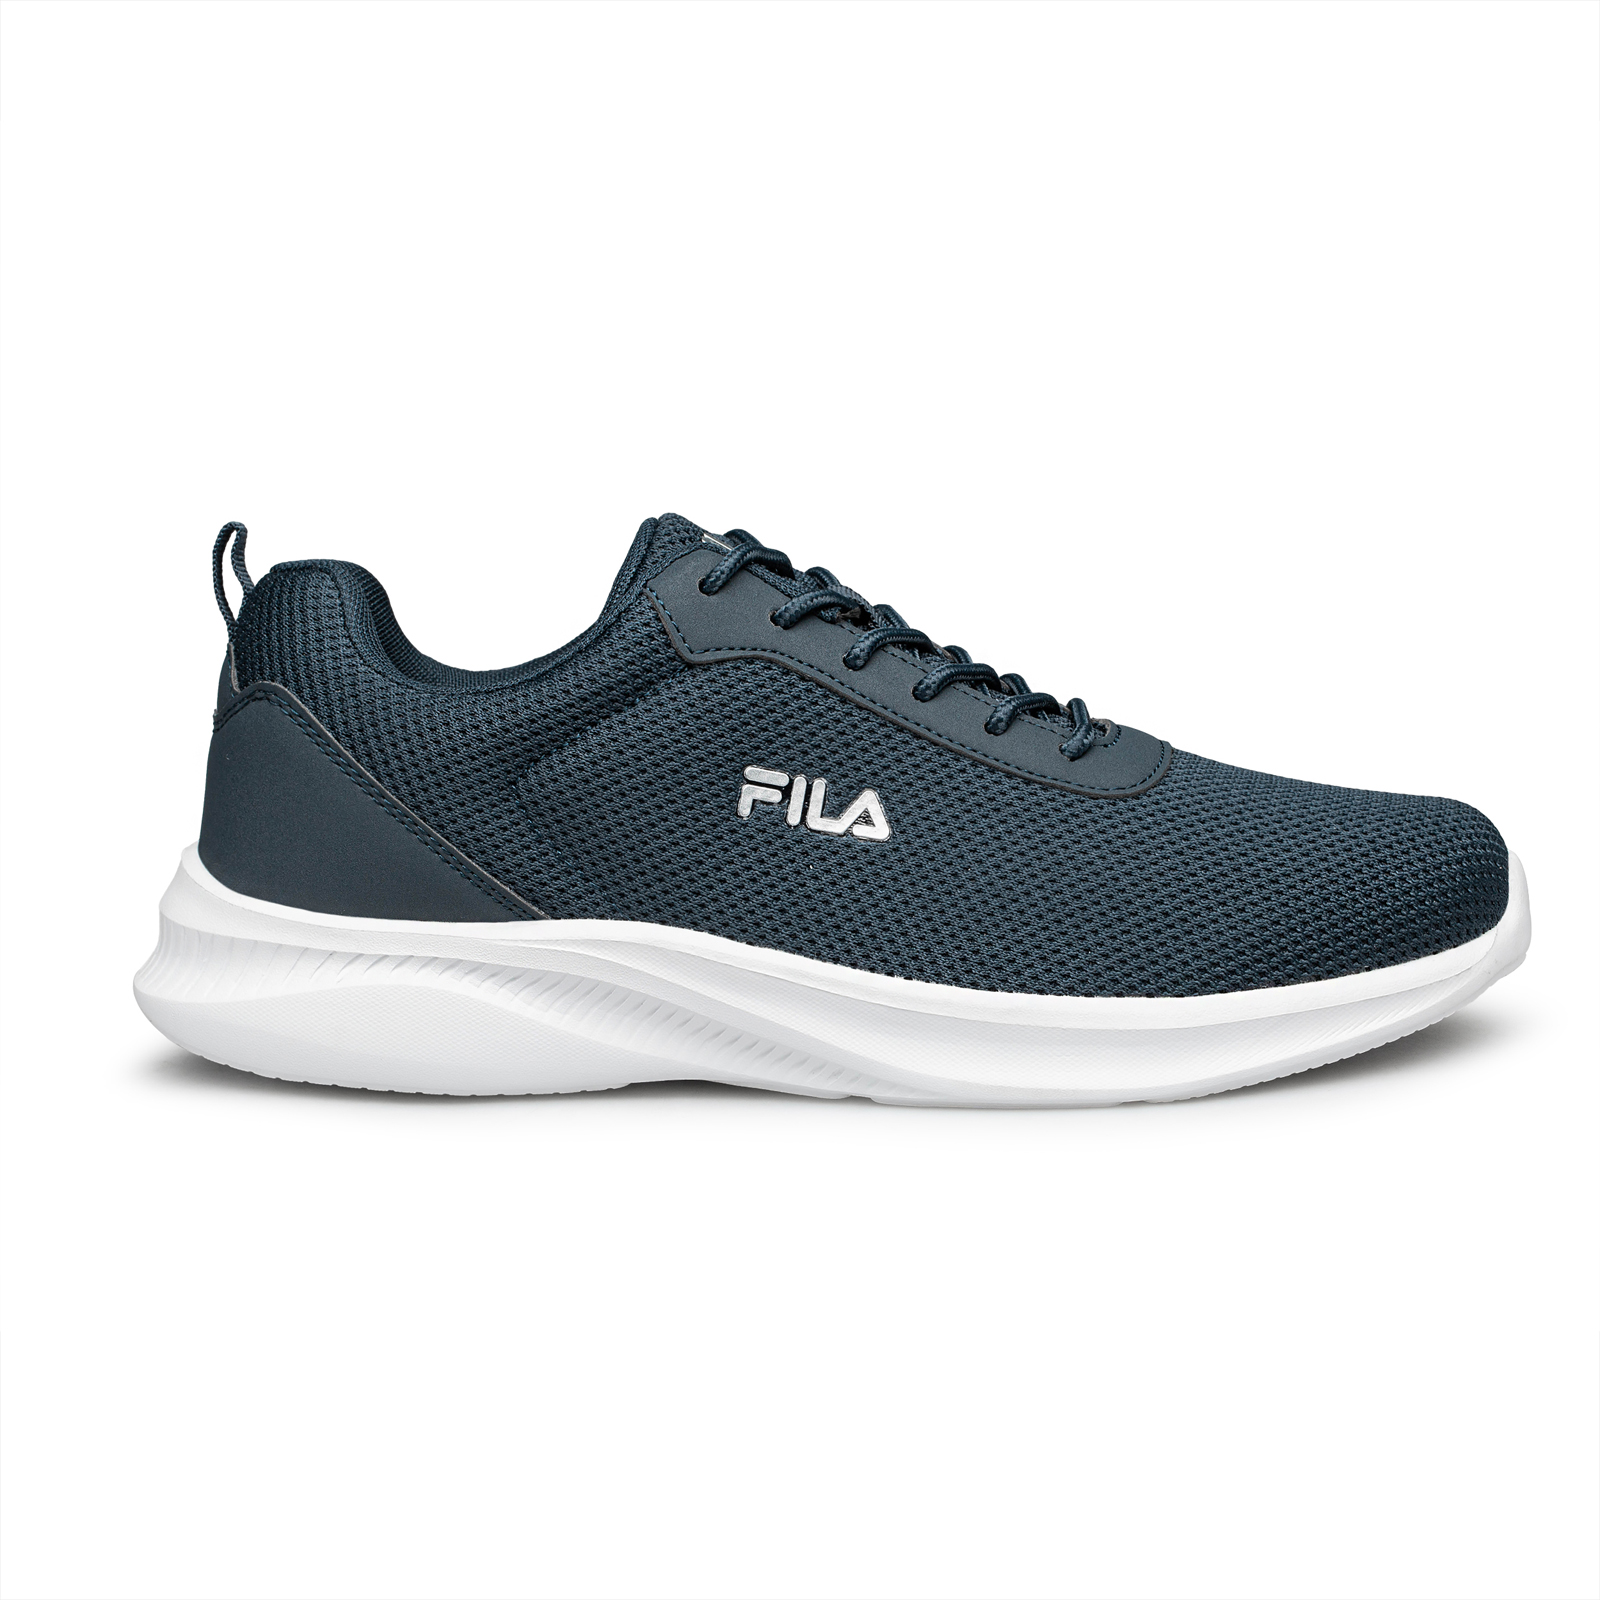 Ανδρικά > Παπούτσια > Αθλητικά > Παπούτσι Low Cut Fila - DORADO 2 FOOTWEAR - DARK BLUE SILVER